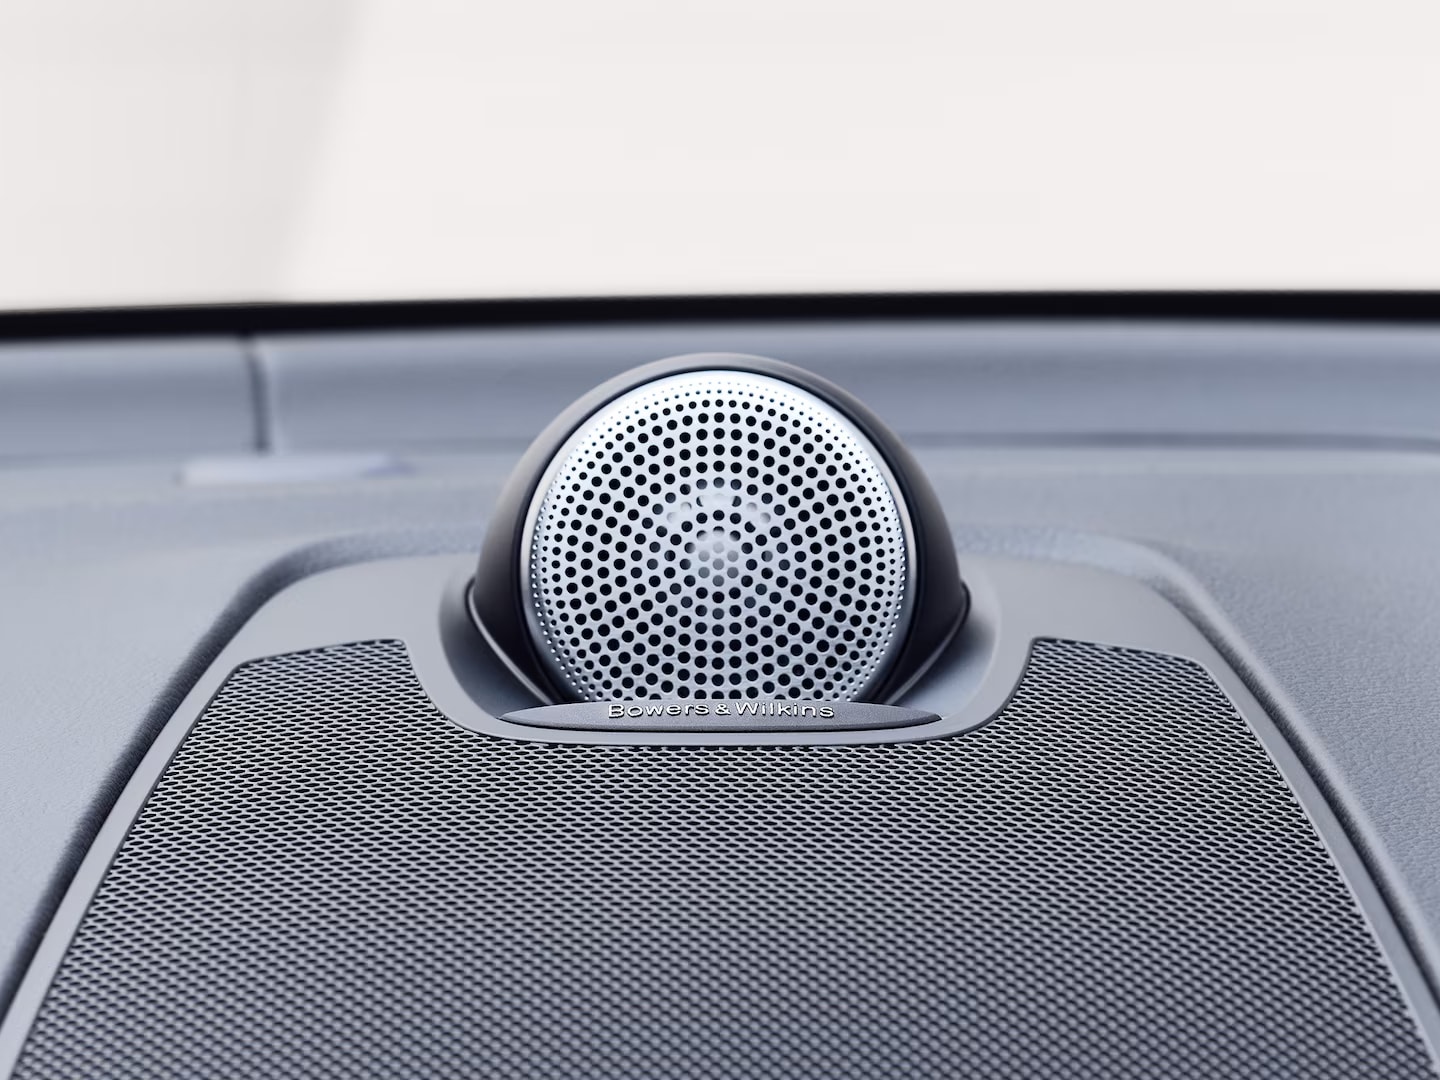 Bowers & Wilkins Lautsprecher im Inneren eines Volvo XC60.